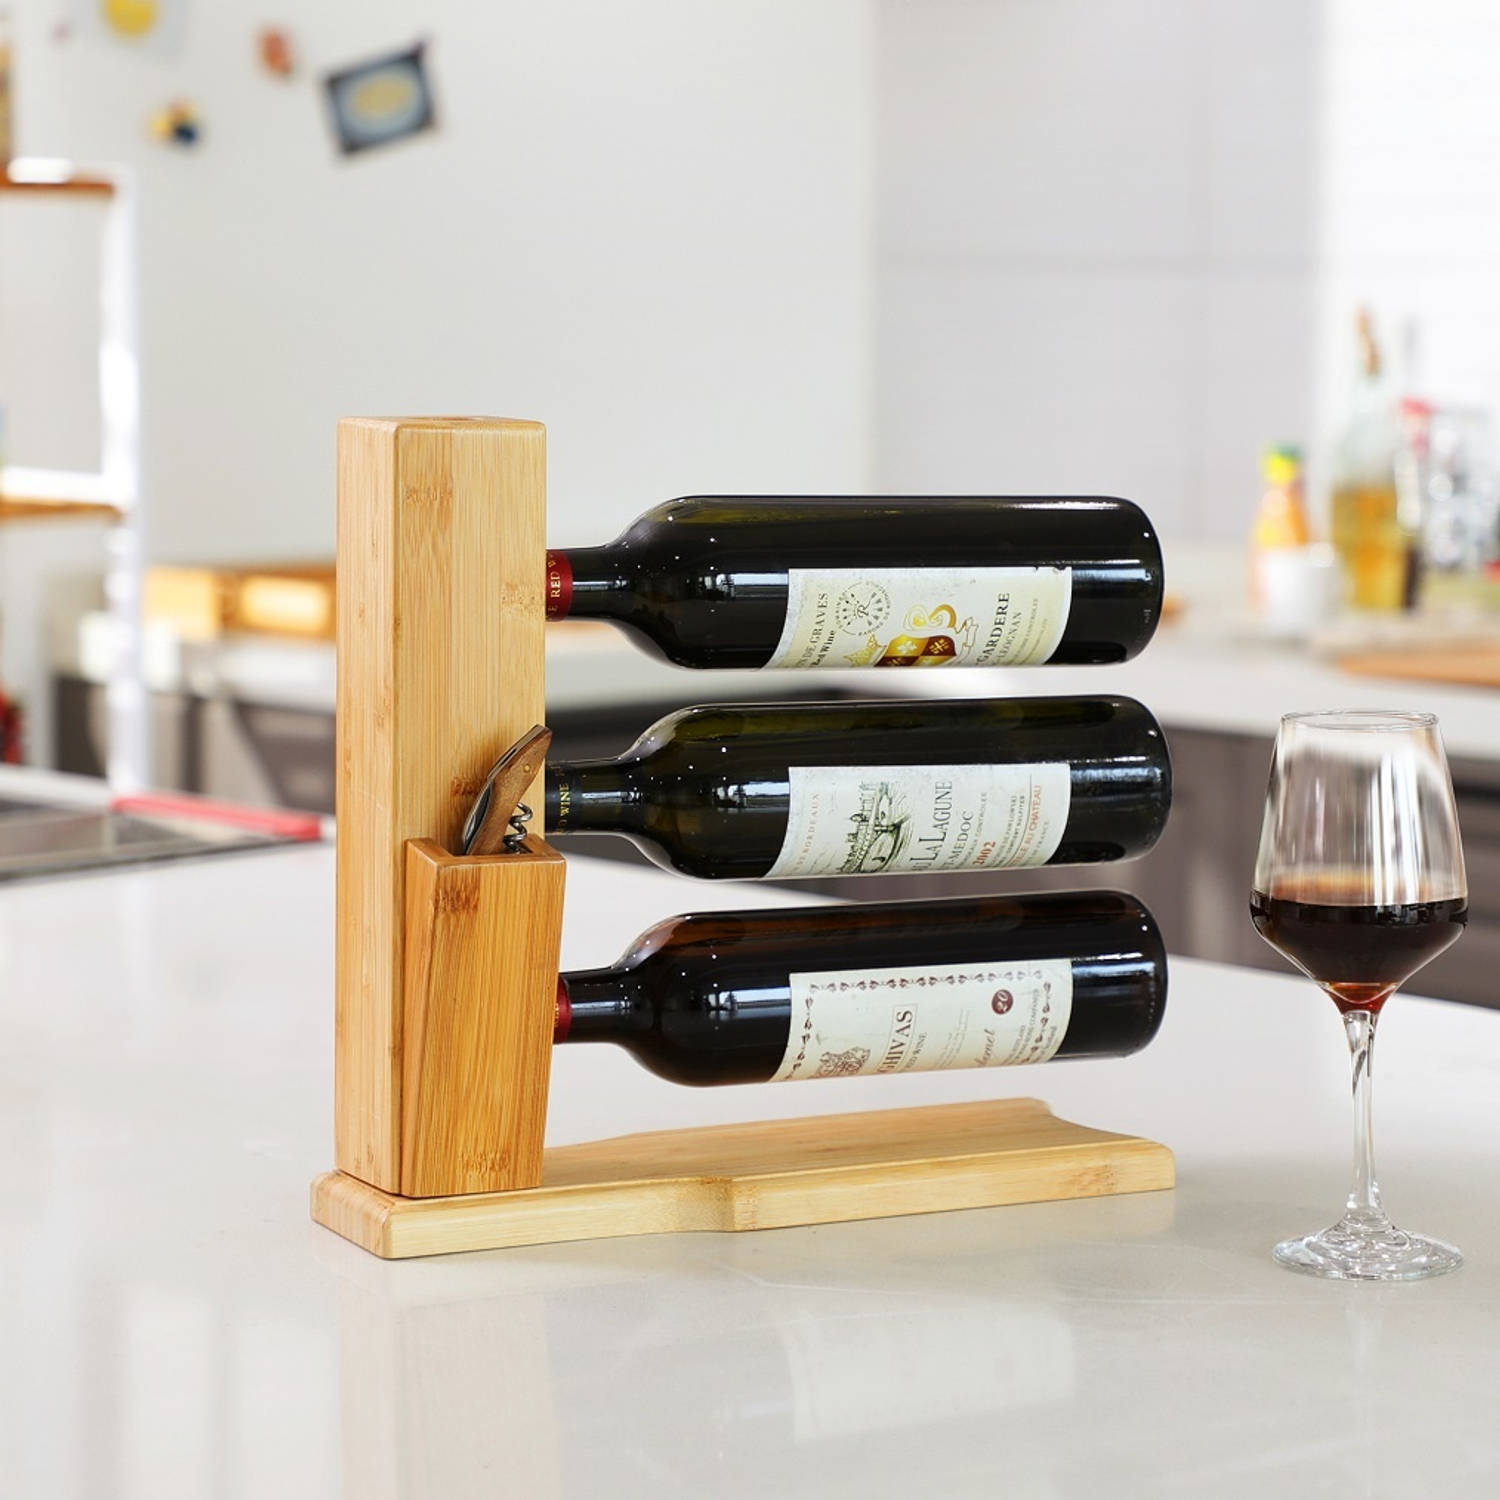 Echter genoeg Beleefd Wijnrek van bamboe hout voor 3 flessen wijn - Design wijnflessenrek - |  Blokker